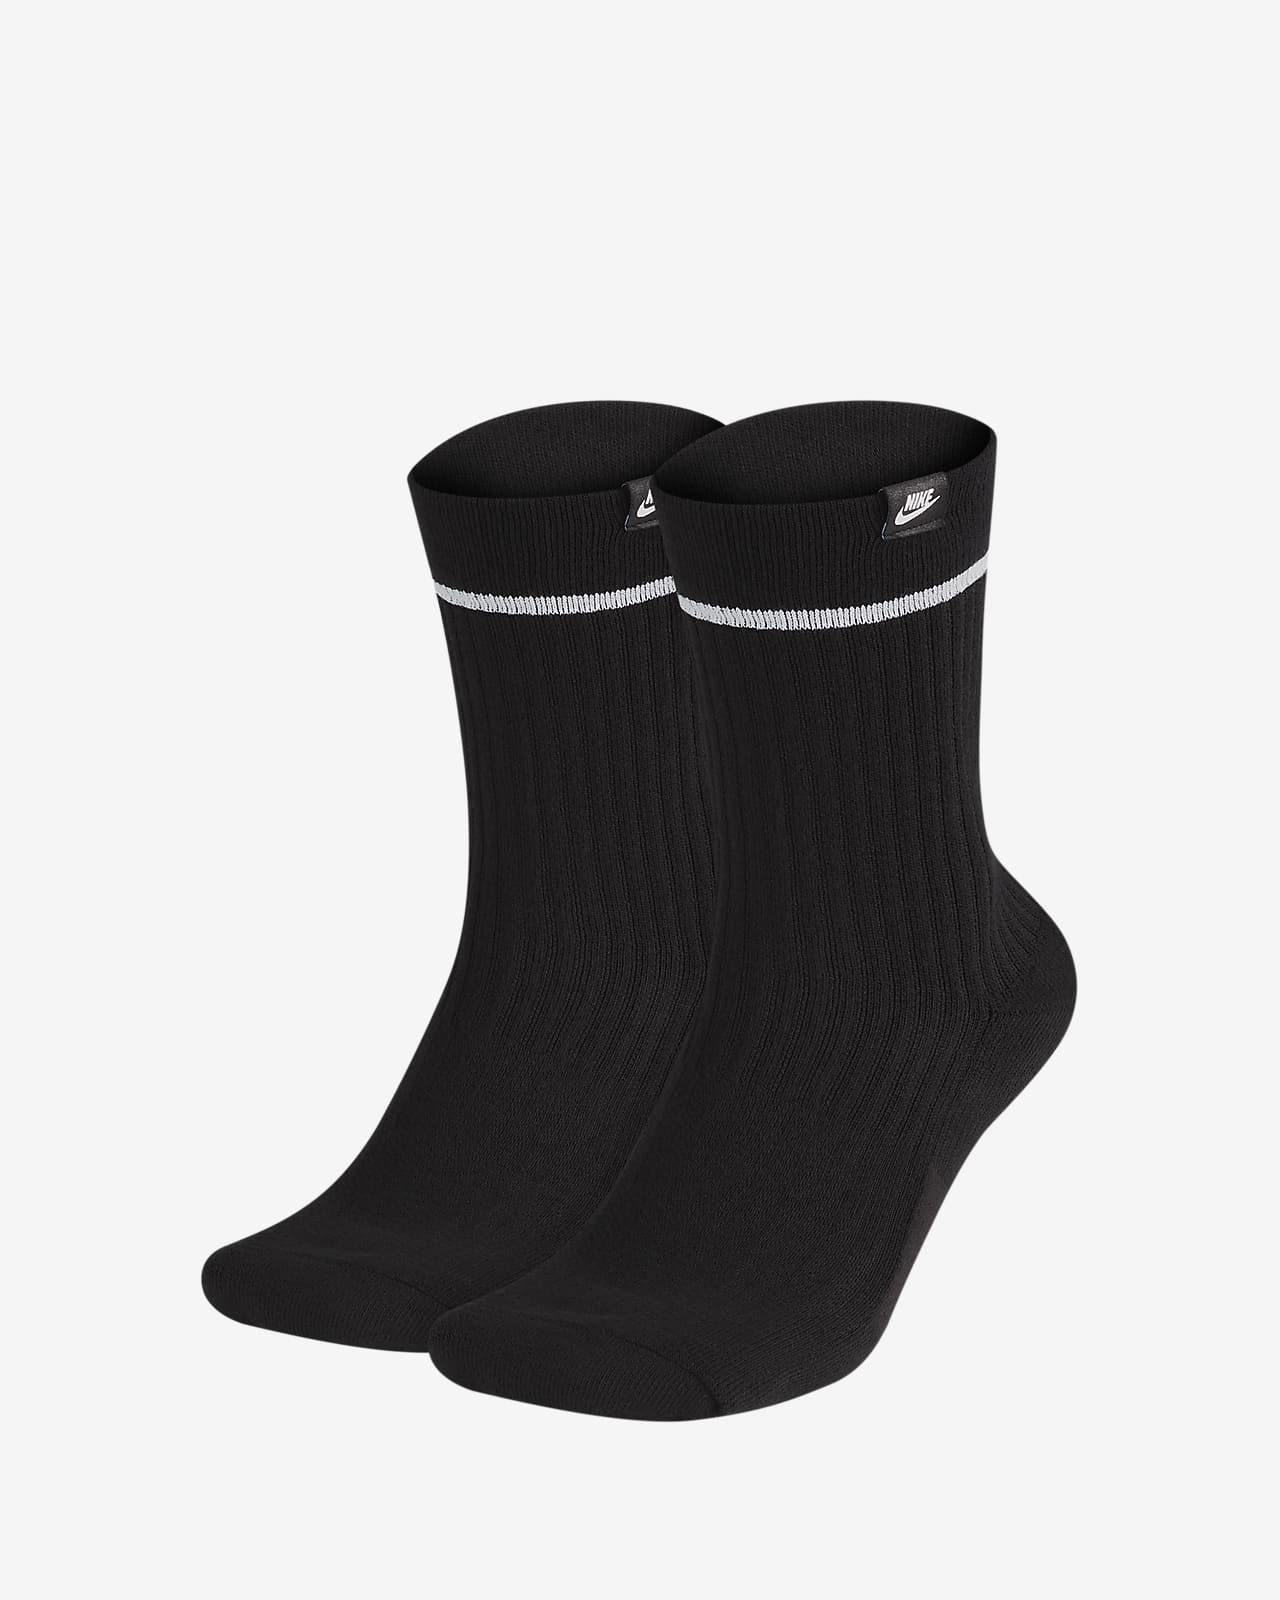 nike snkr sox ankle socks